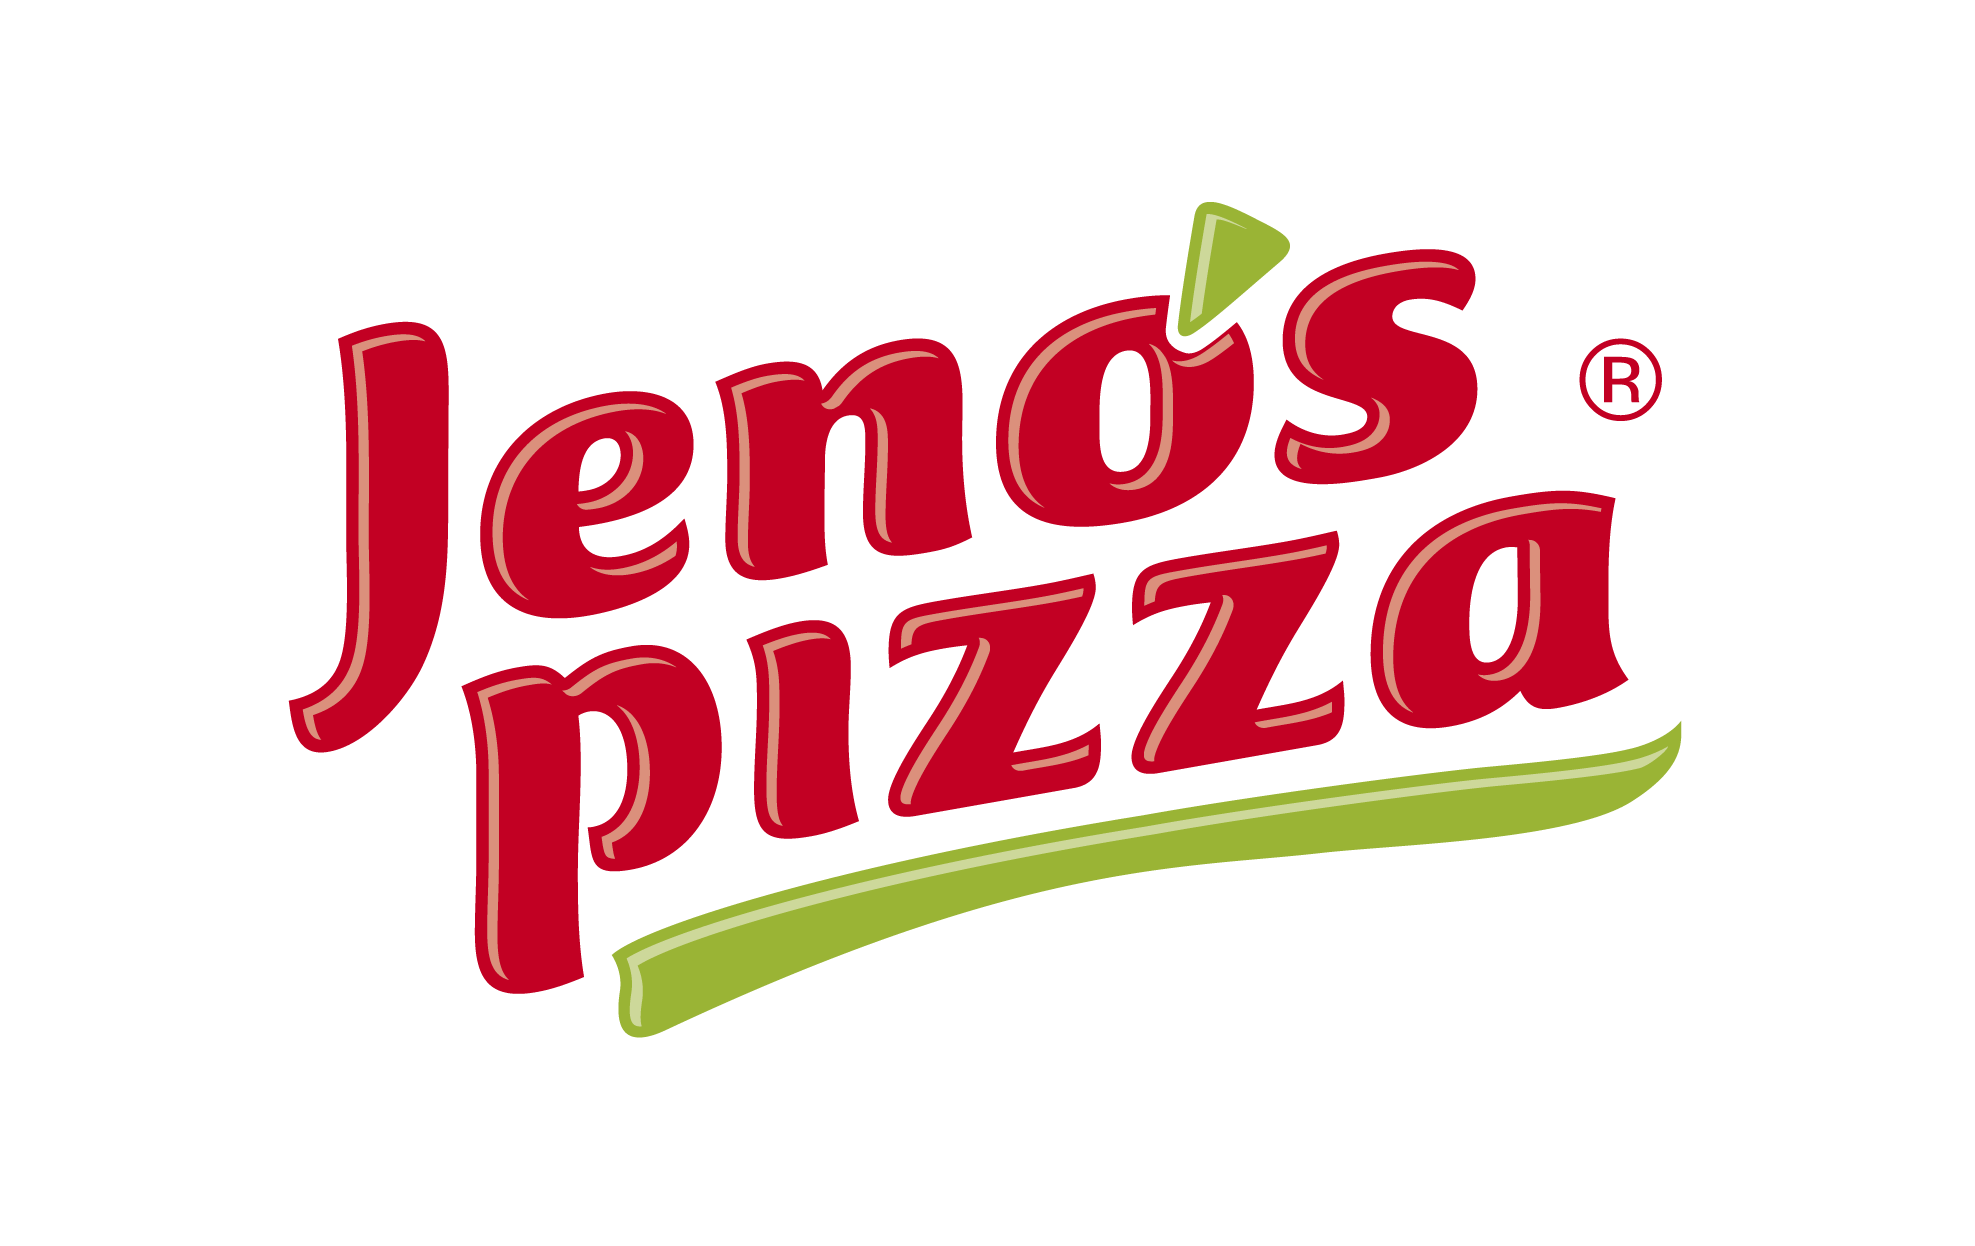 Logo Jeno's Pizza